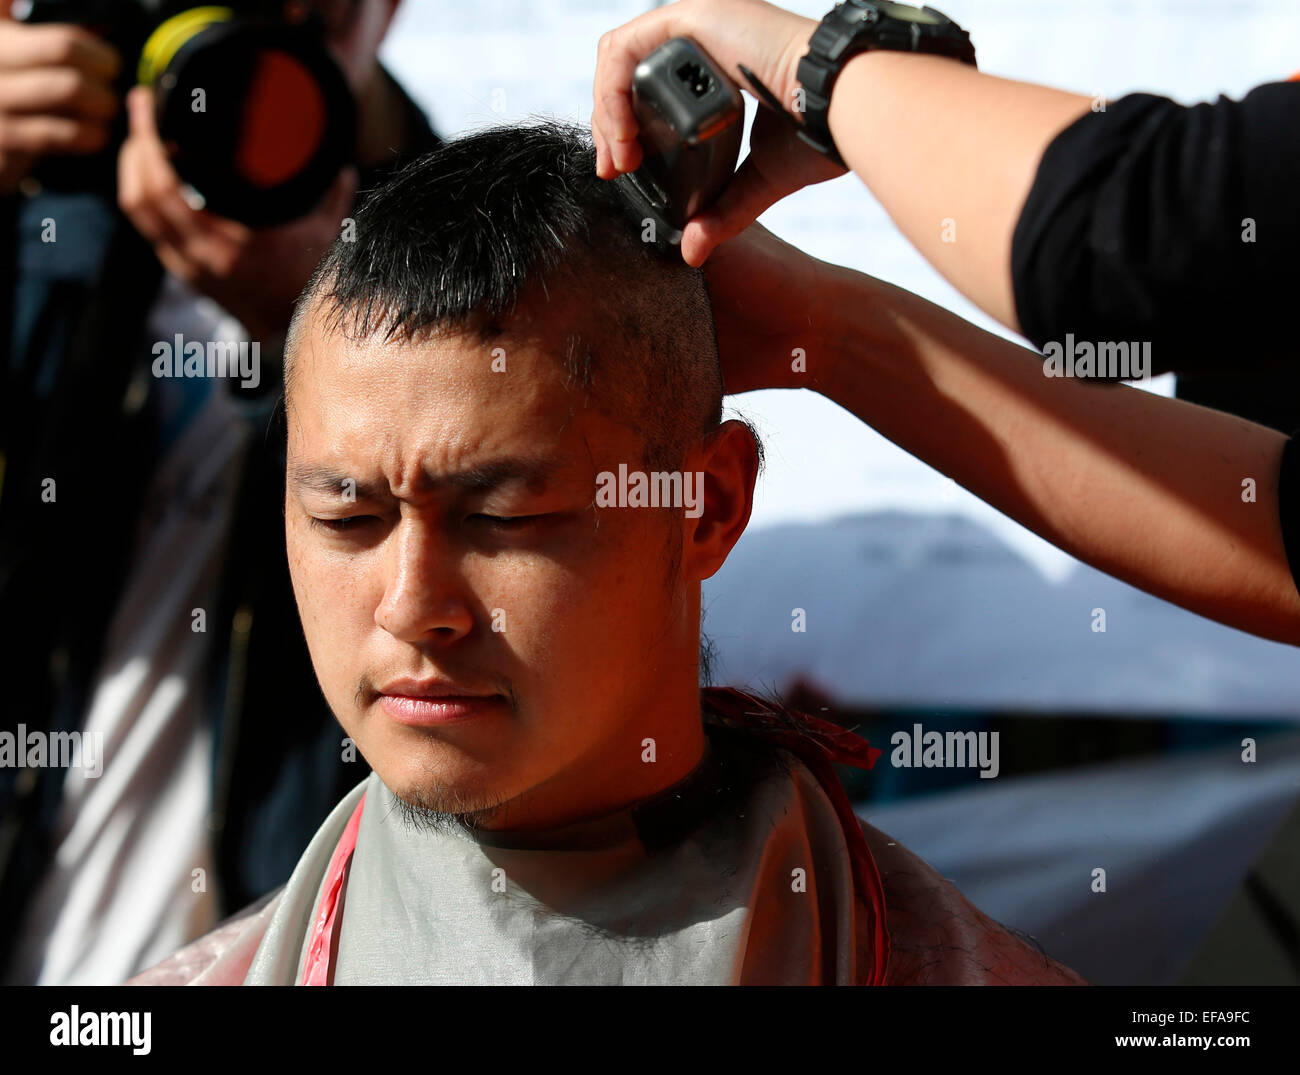 Le pilote qui assiste à l'Union européenne protestent et sont punis par la Chine airline couper ses cheveux pour protester contre la Chine Airlines Group's vengeance rancune à Taipei, Taiwan, Chine, le 29 janvier, 2015 Banque D'Images